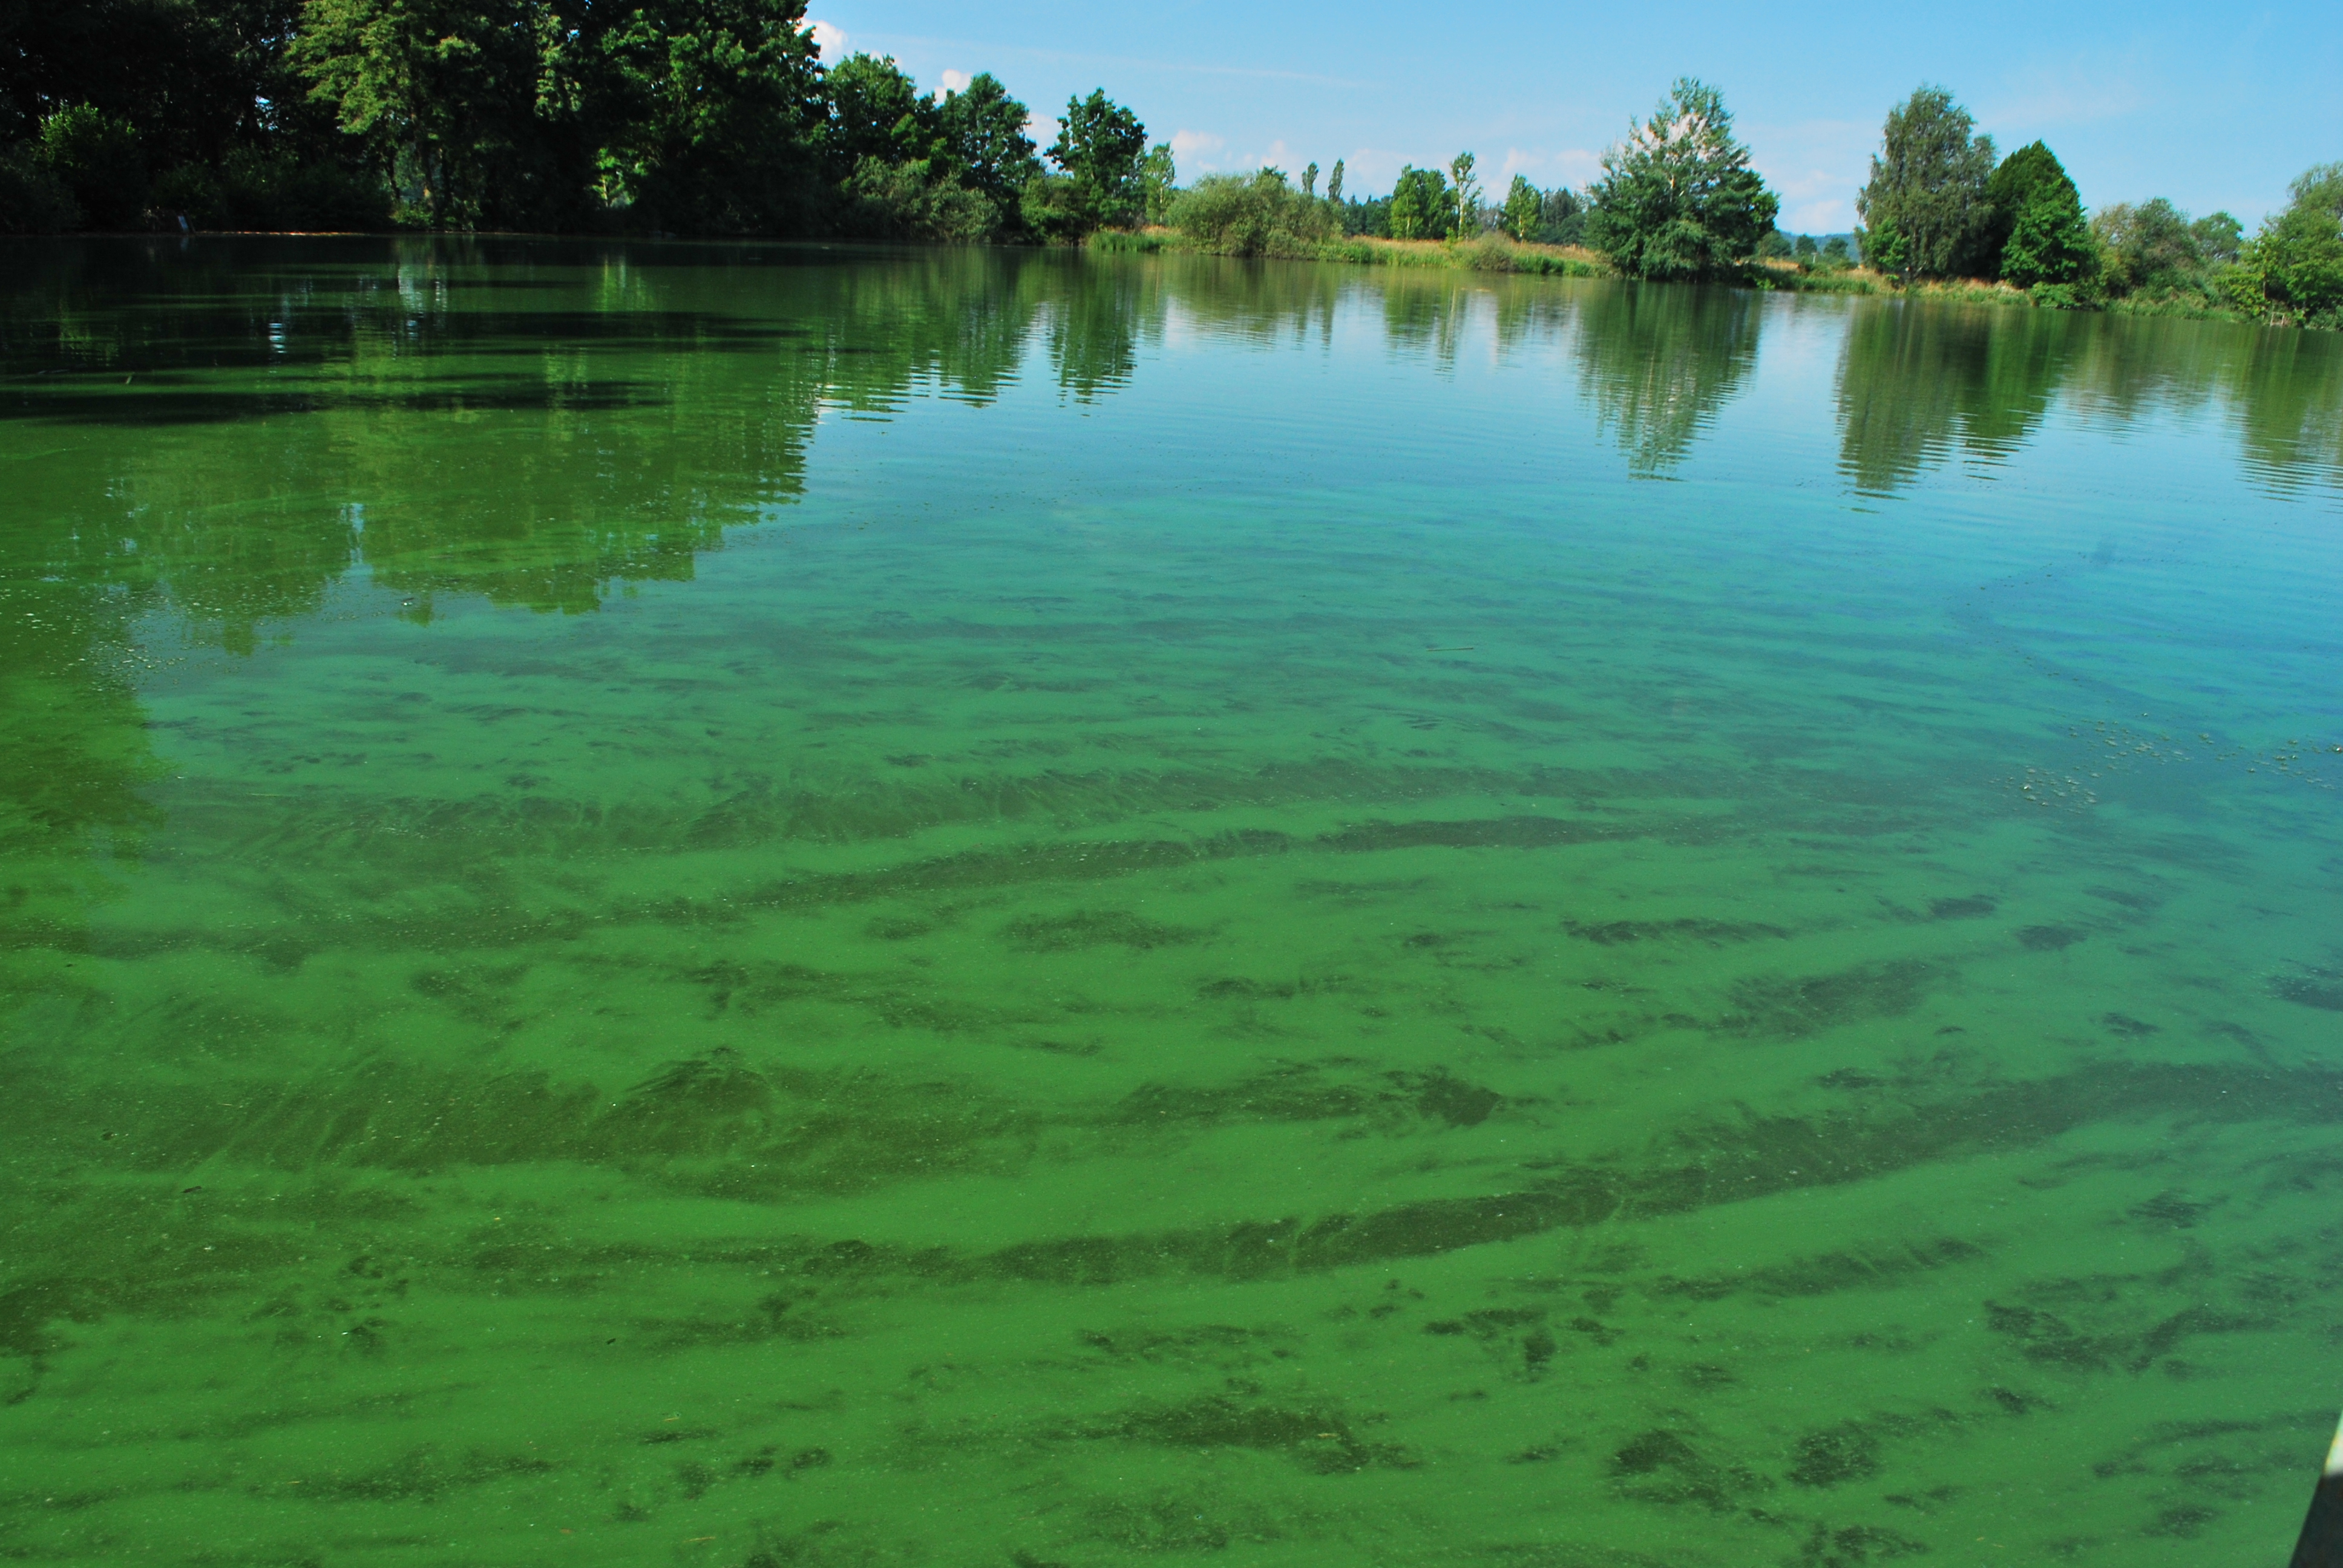 Nadměrné množství fosforu ve vodě podporuje intenzivní rozvoj sinic a řas. Foto David Kortan